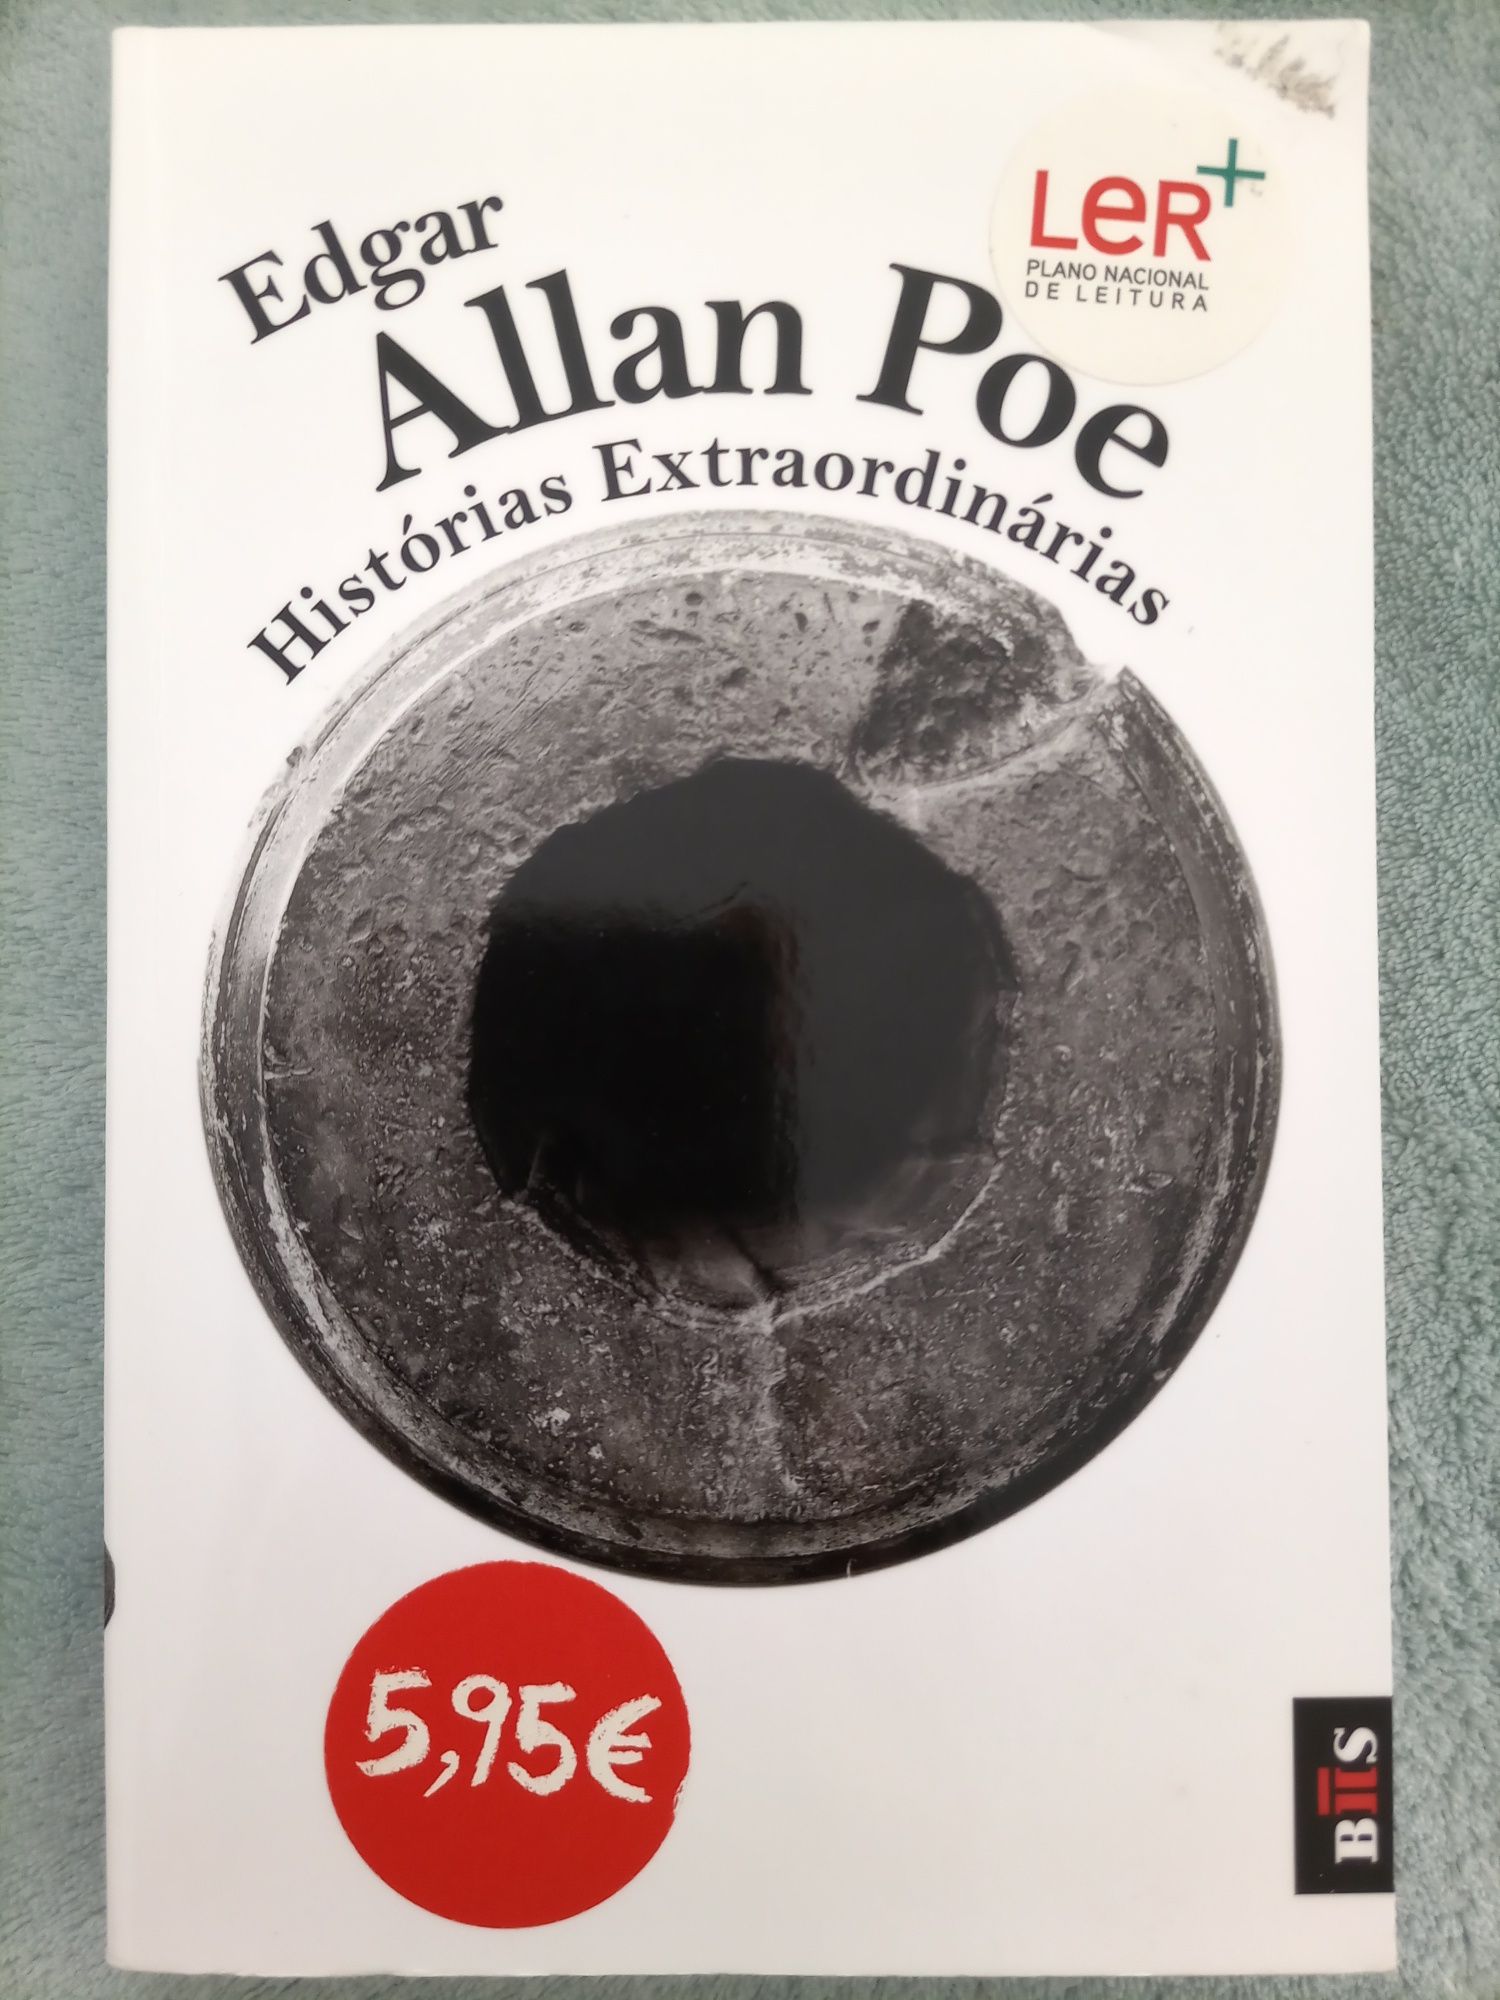 Edgar Allan Poe "Histórias Extraordinárias"